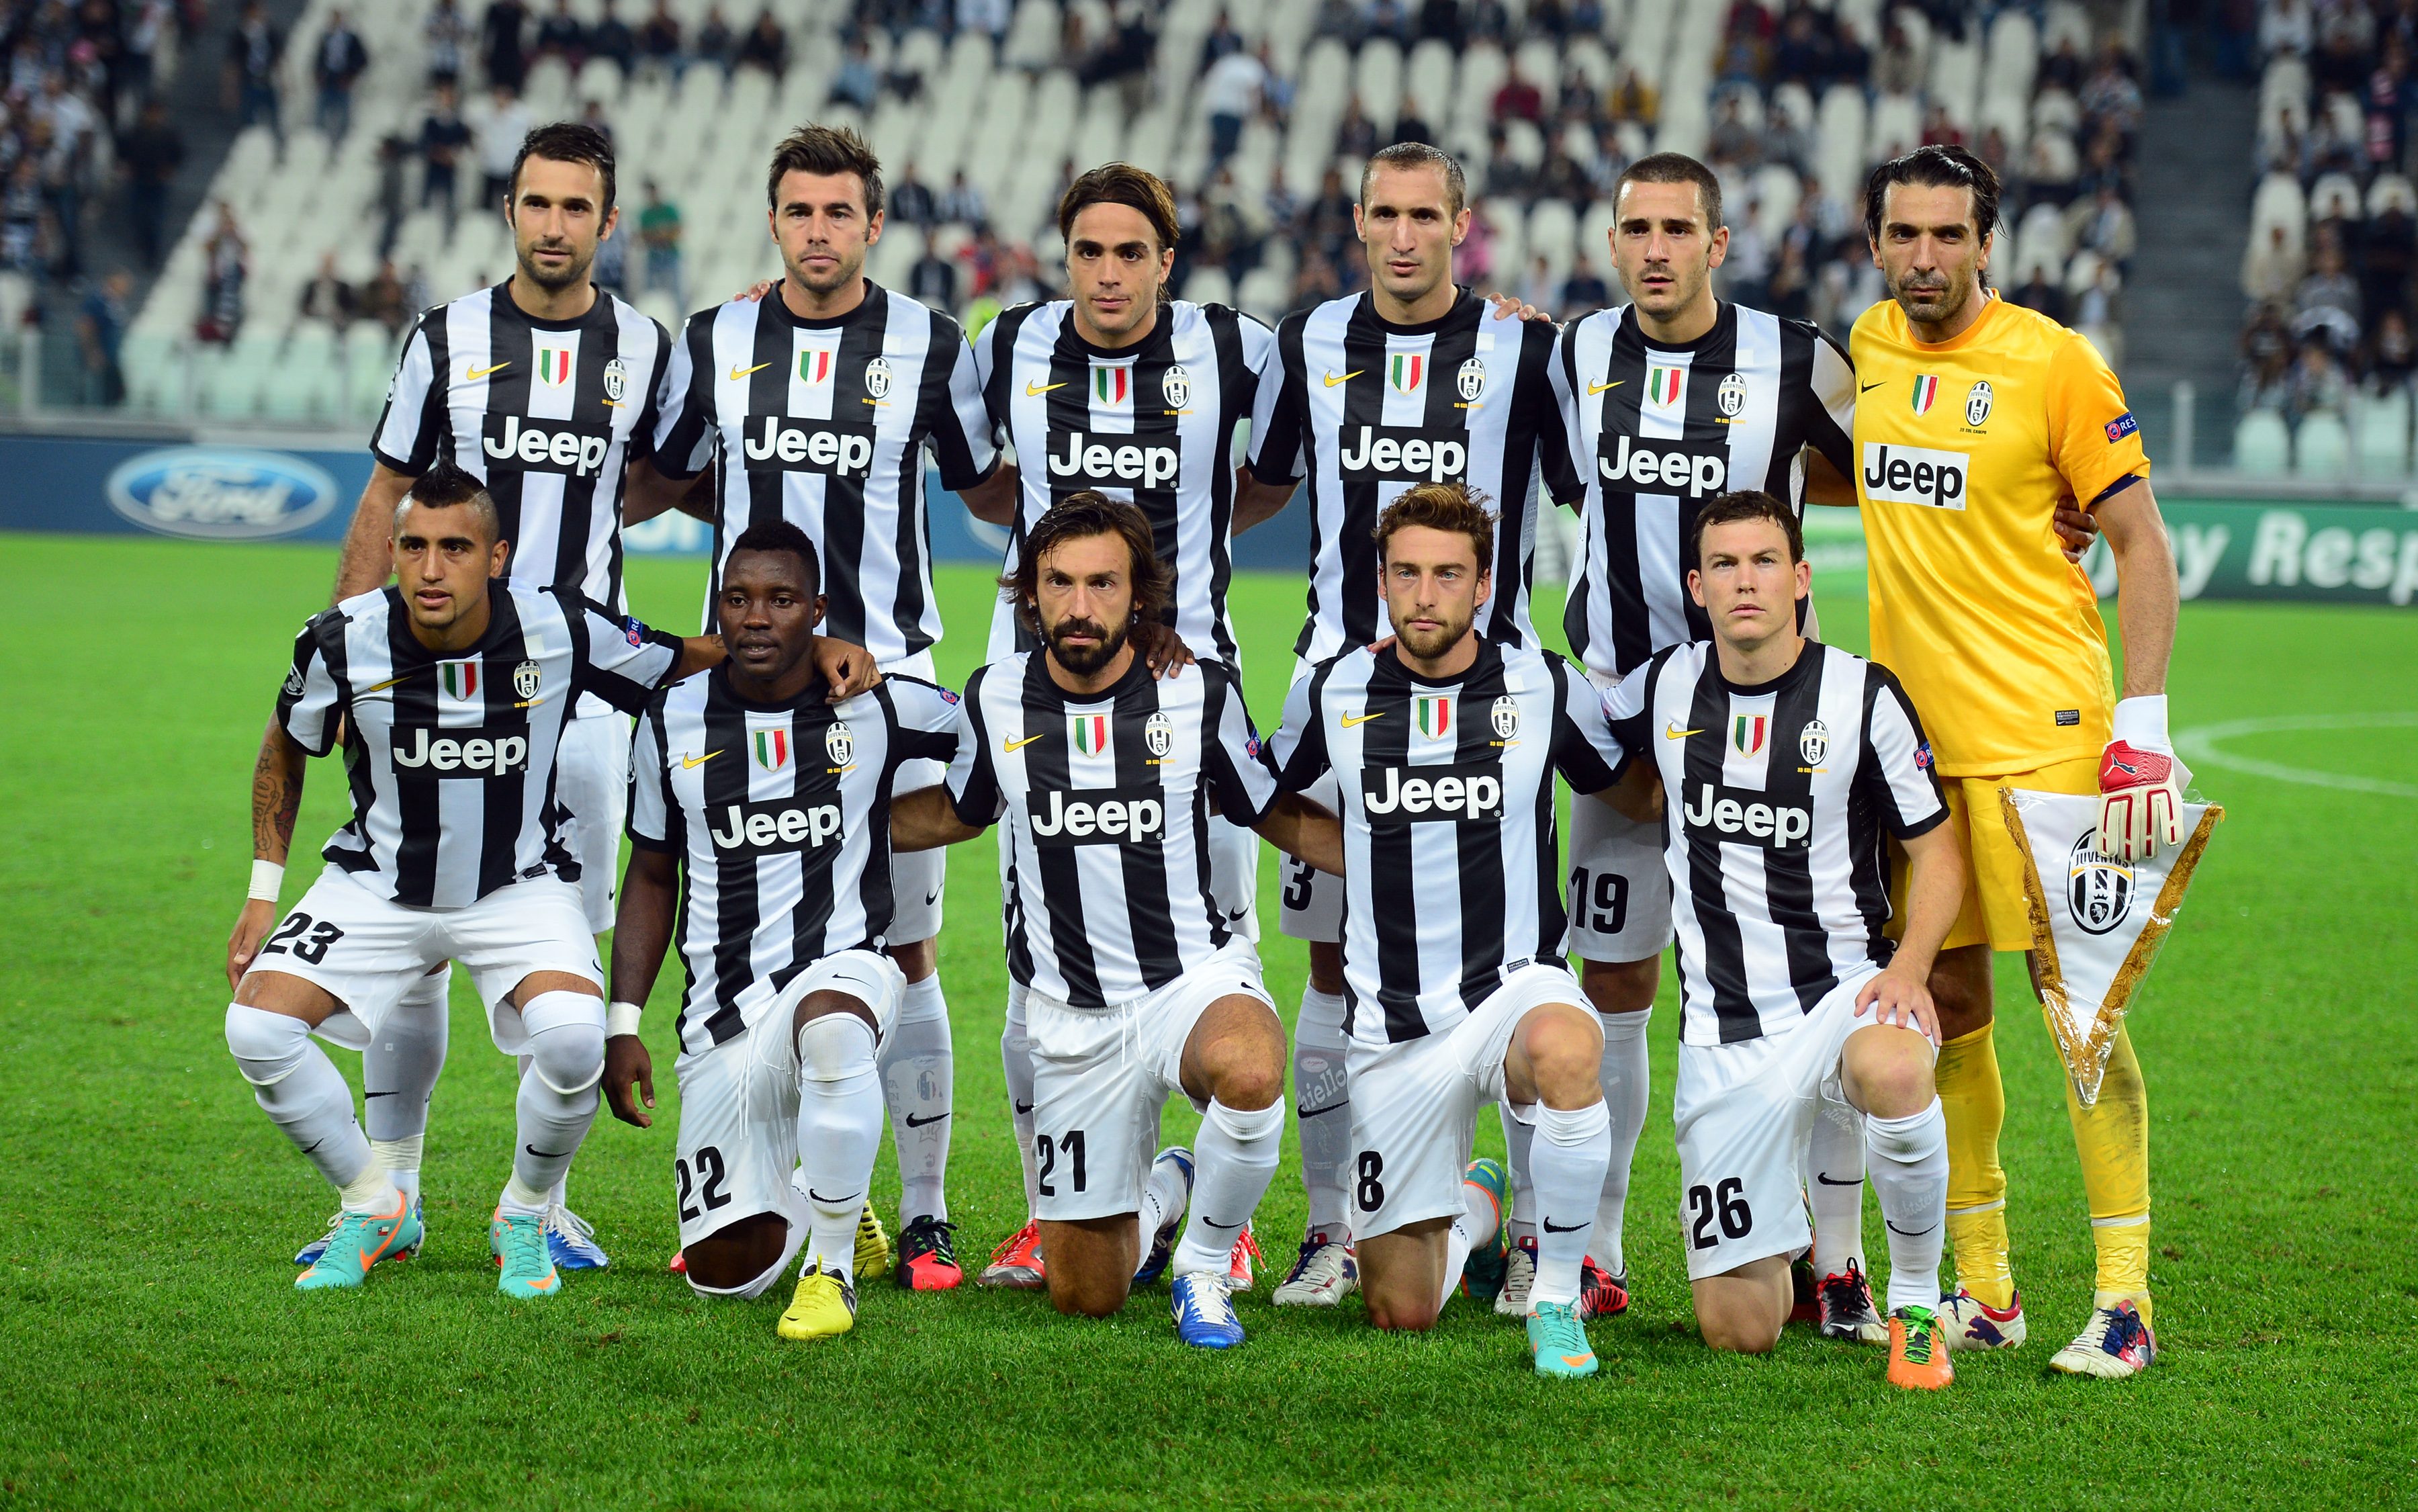 Juventus Juventus live